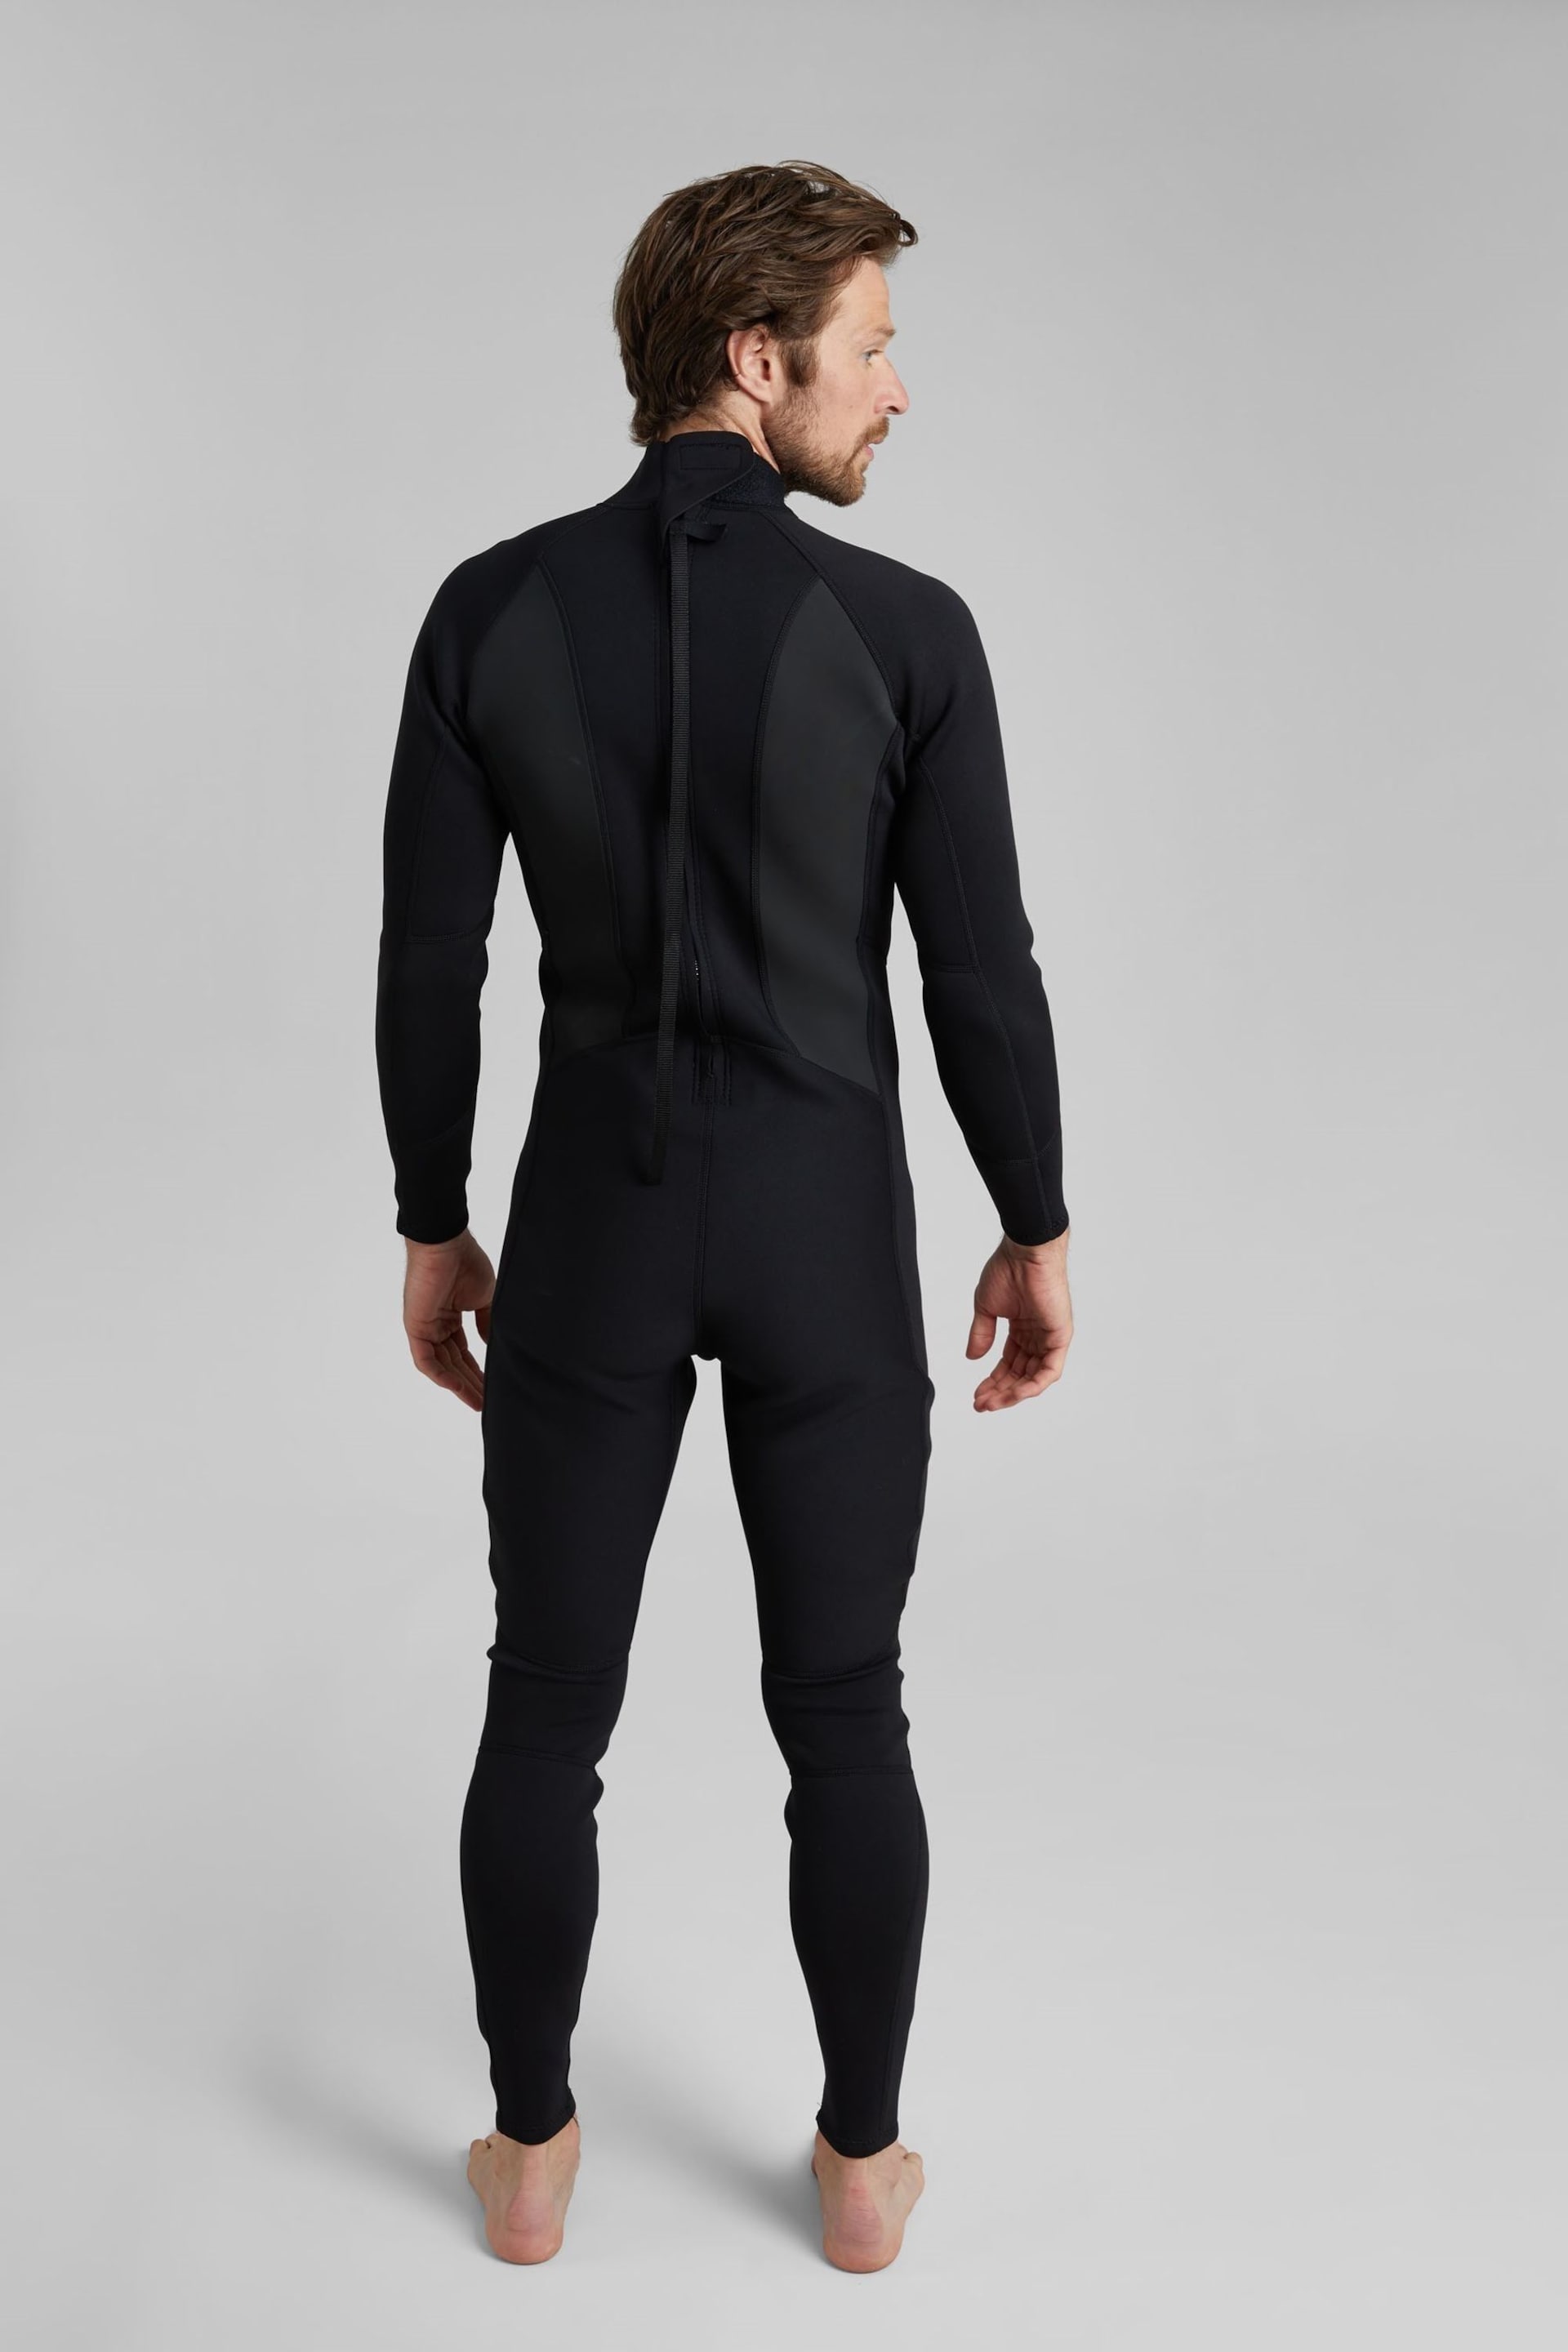 Mountain Warehouse Black Mens Full Length Neoprene Wetsuit - Image 2 of 5